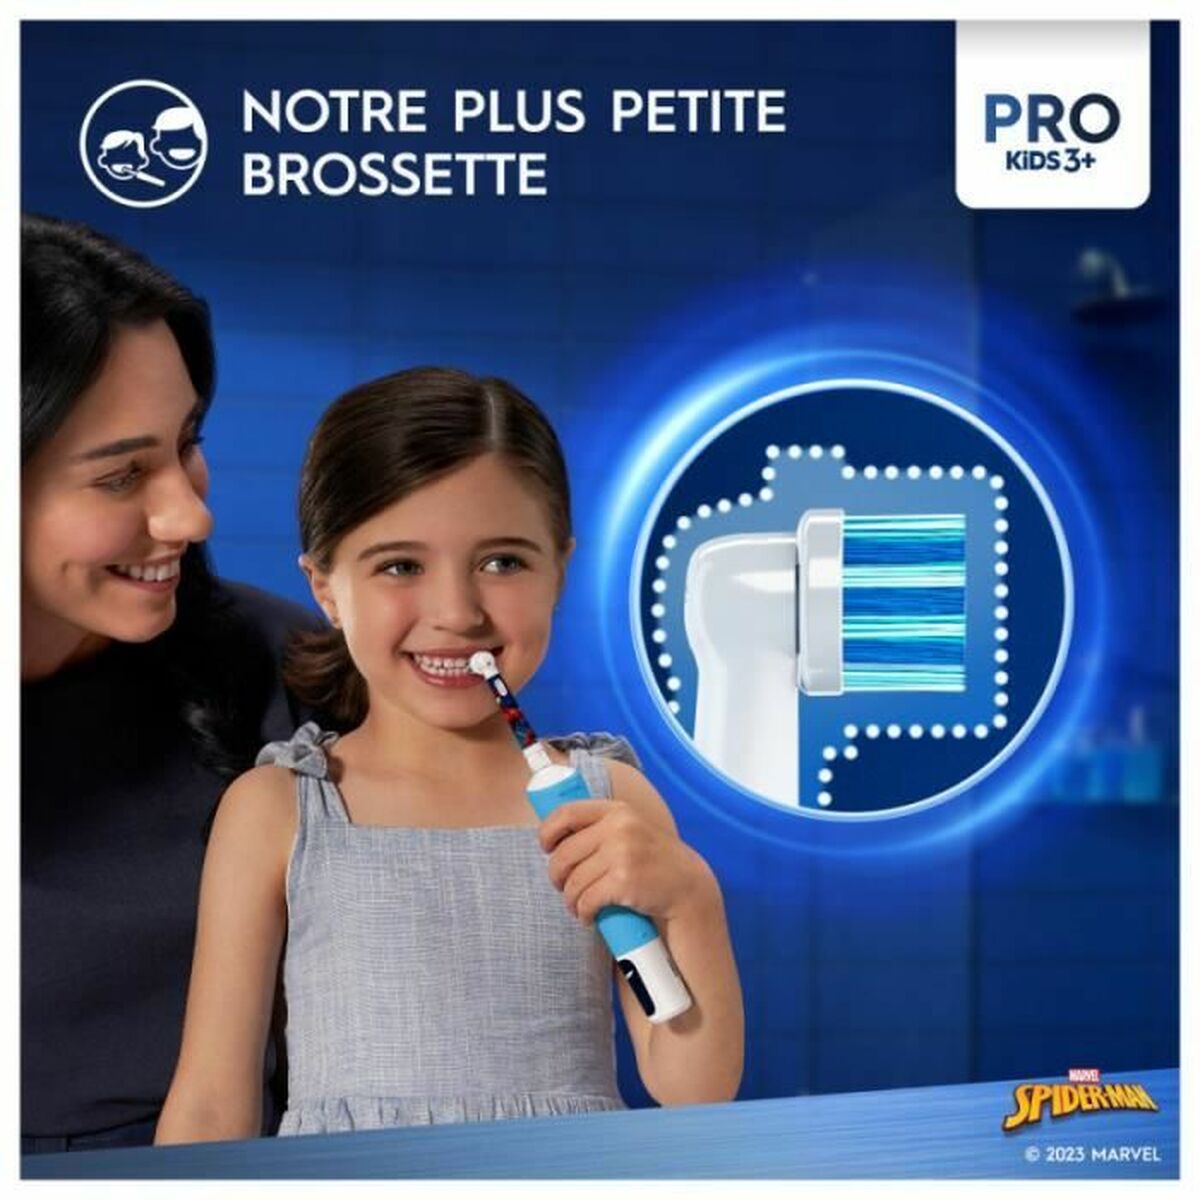 Electric Toothbrush Oral-B Pro kids +3